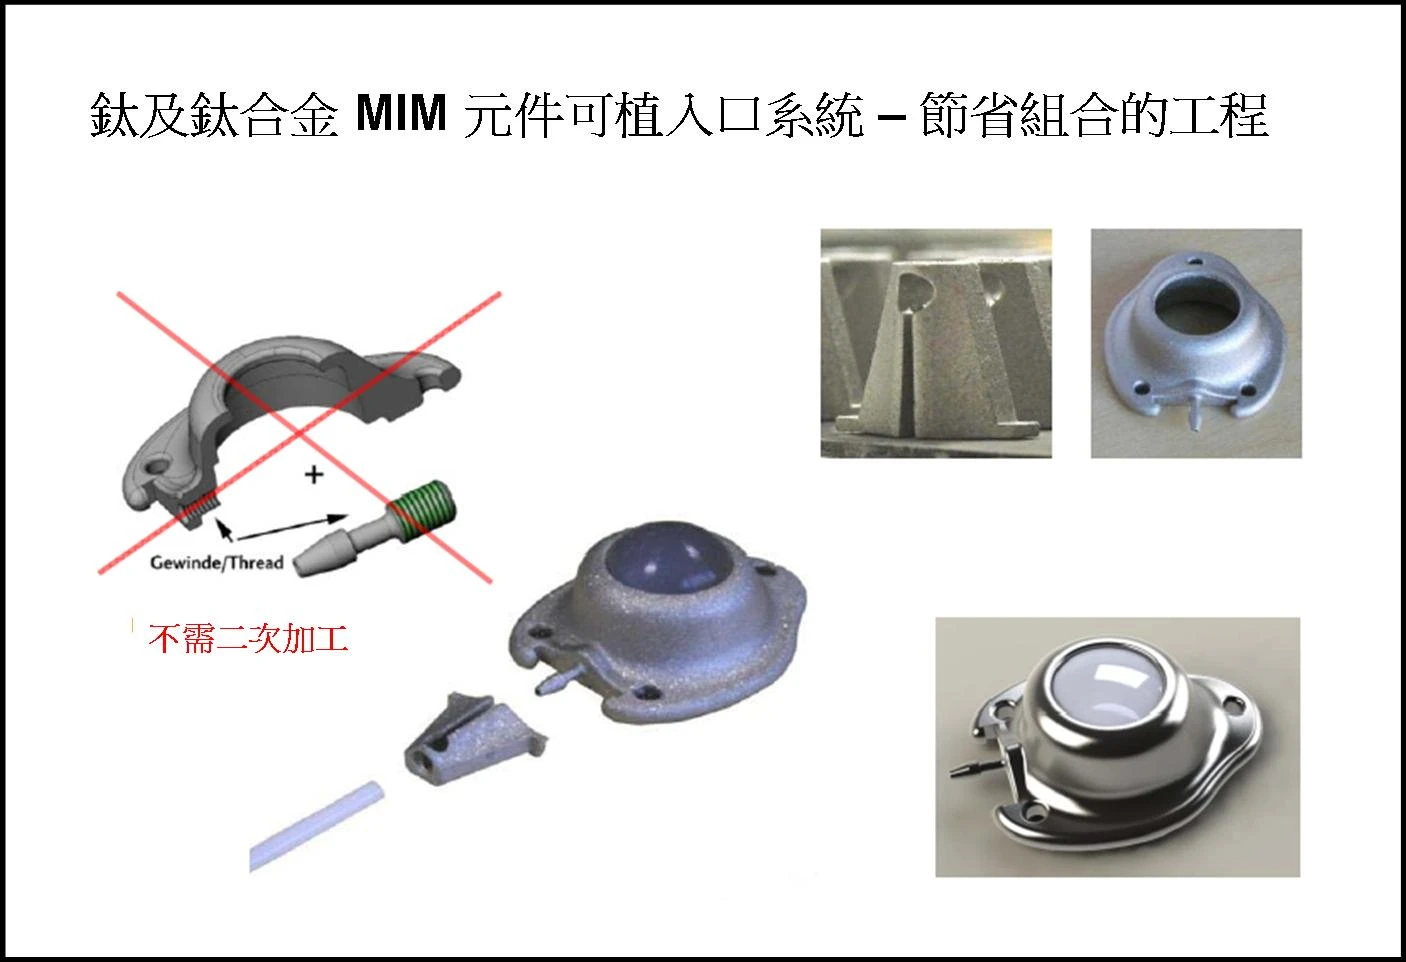 鈦及鈦合金 MIM 元件可植入口系統 – 節省組合的工程